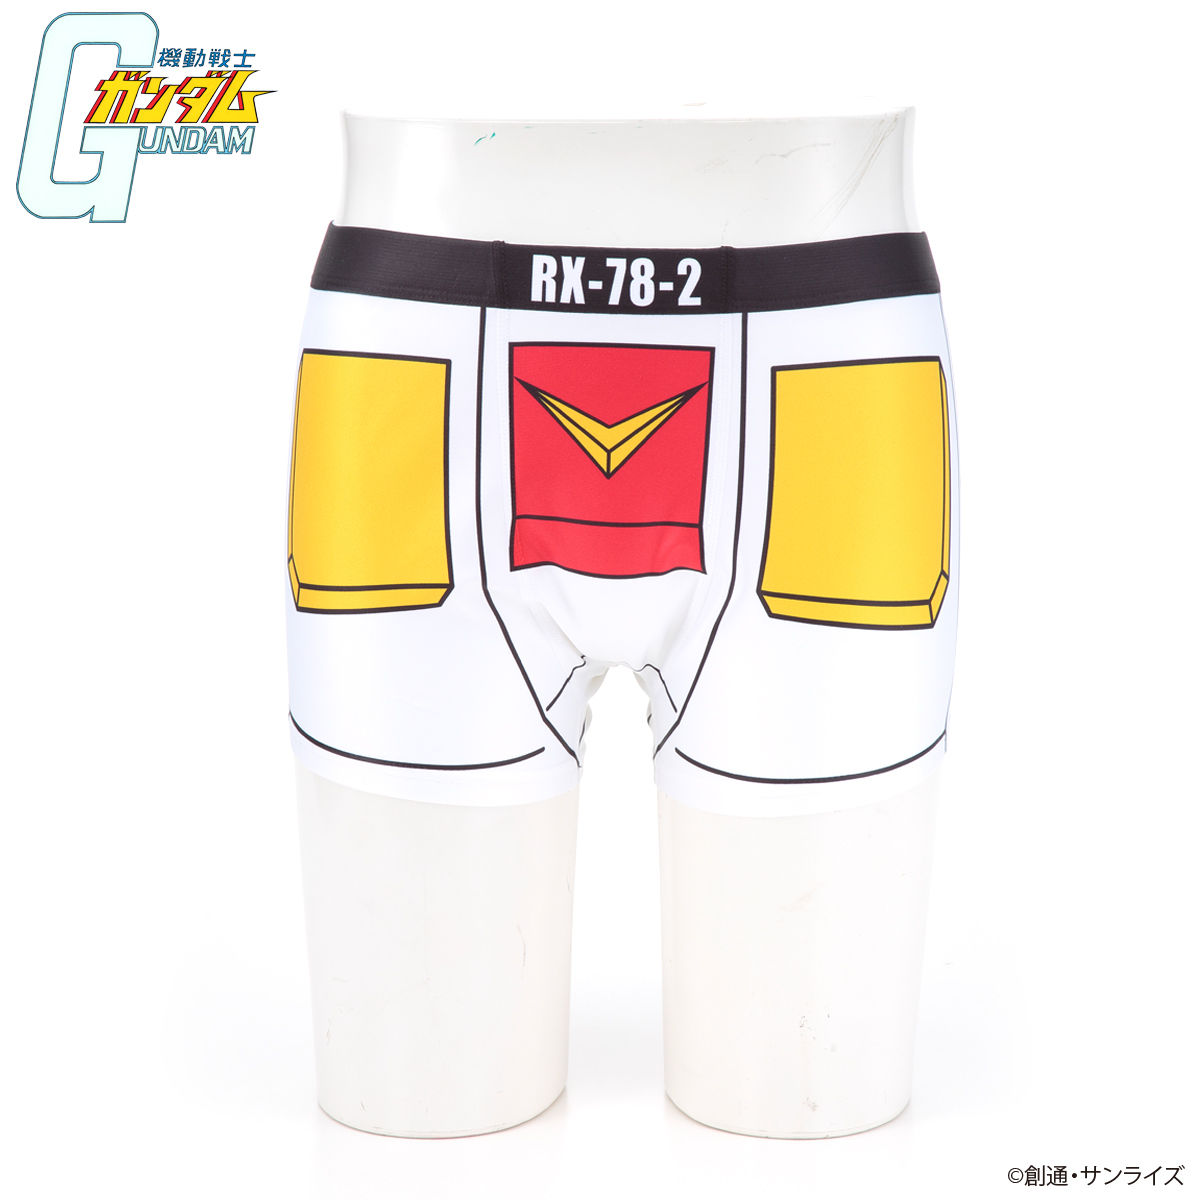 Mobile Suit Gundam Mobile Suit Boxers